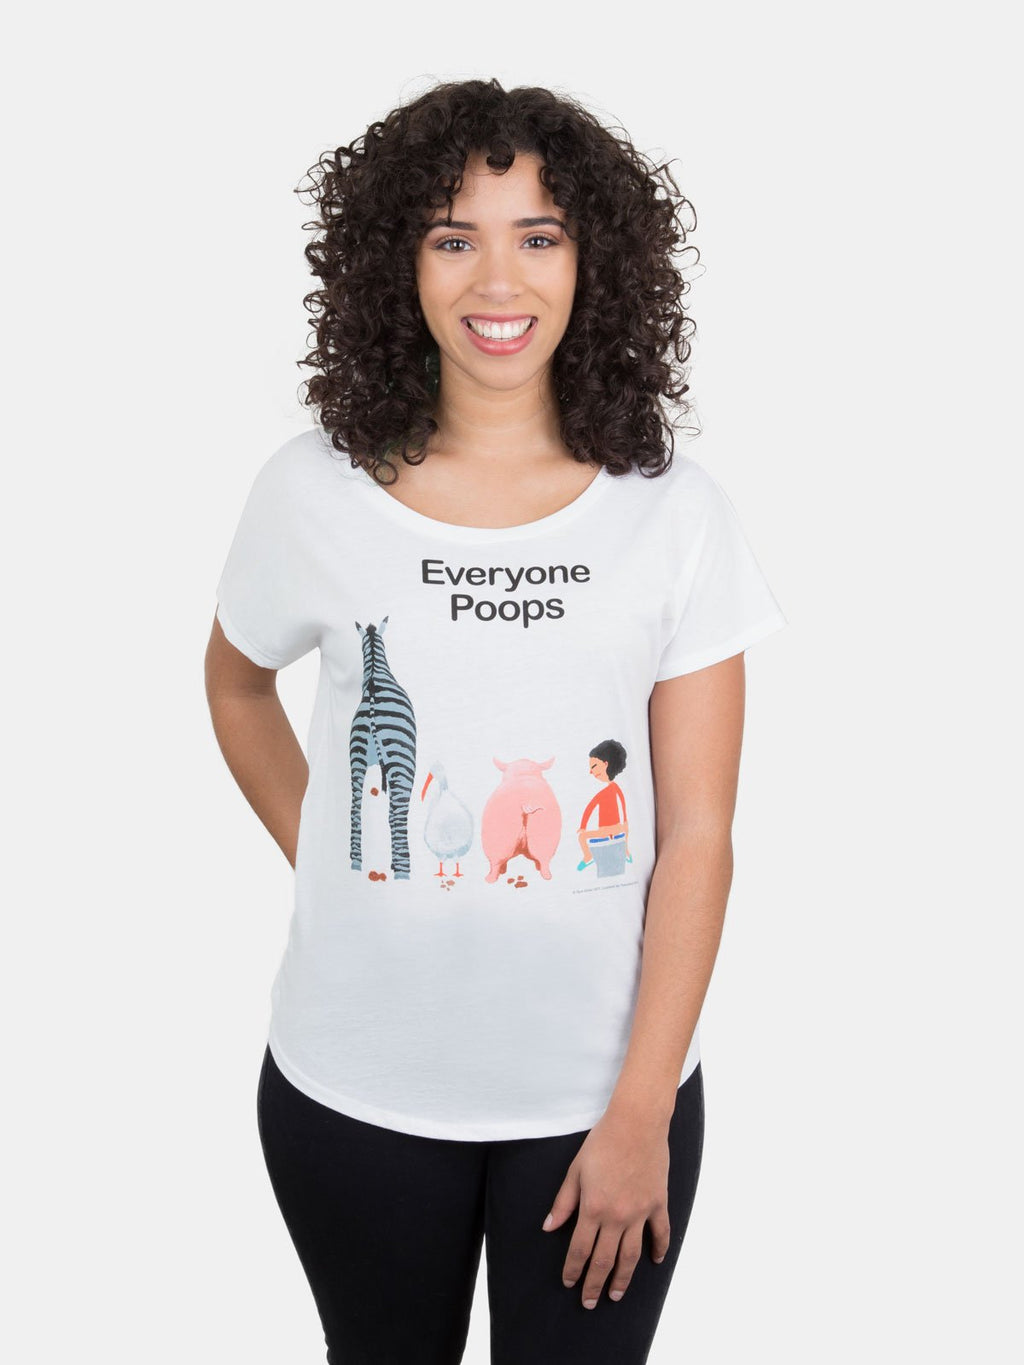 Everyone Poops Women's T-Shirt